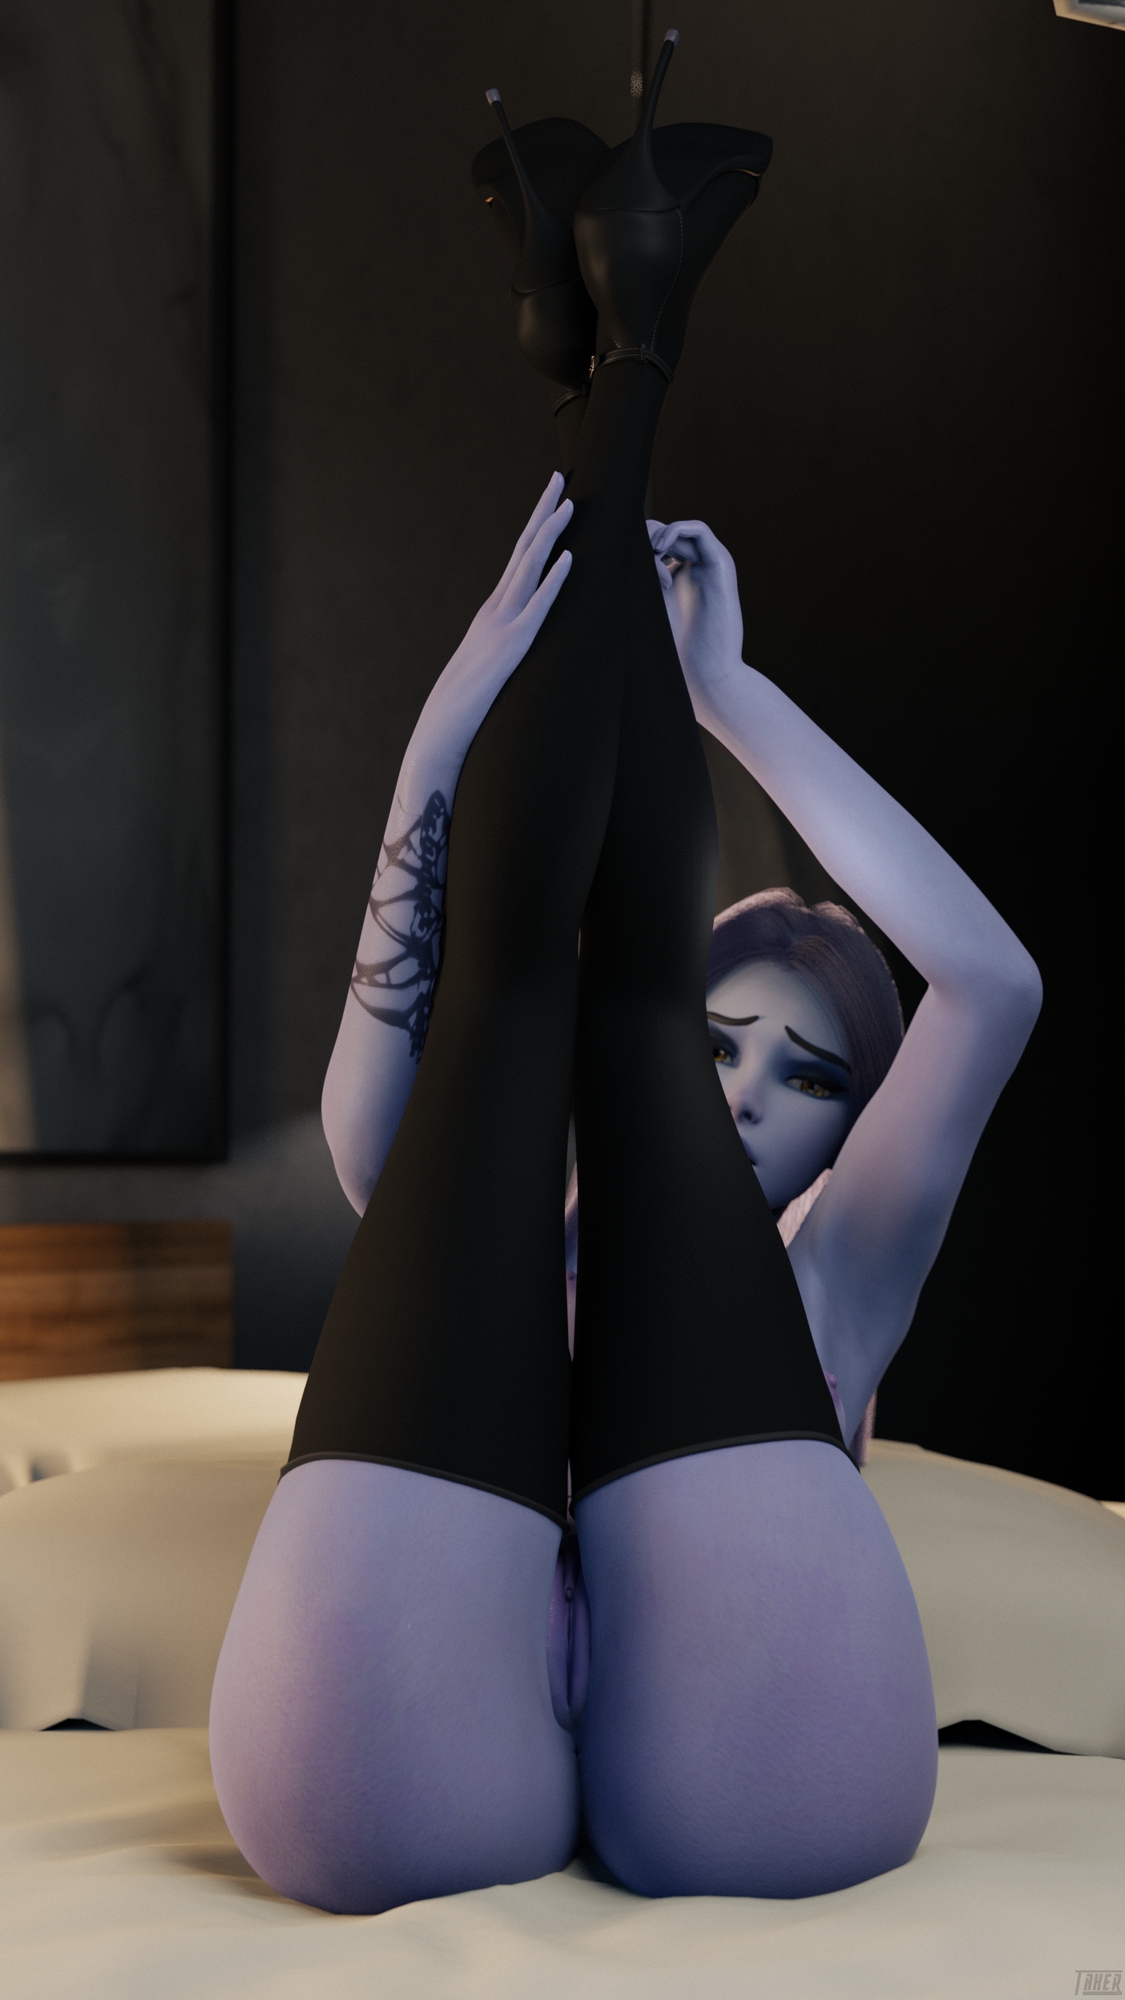 Widowmaker Legs Up Widowmaker Overwatch Pussy High Heels Stockings 3d Porn Legs